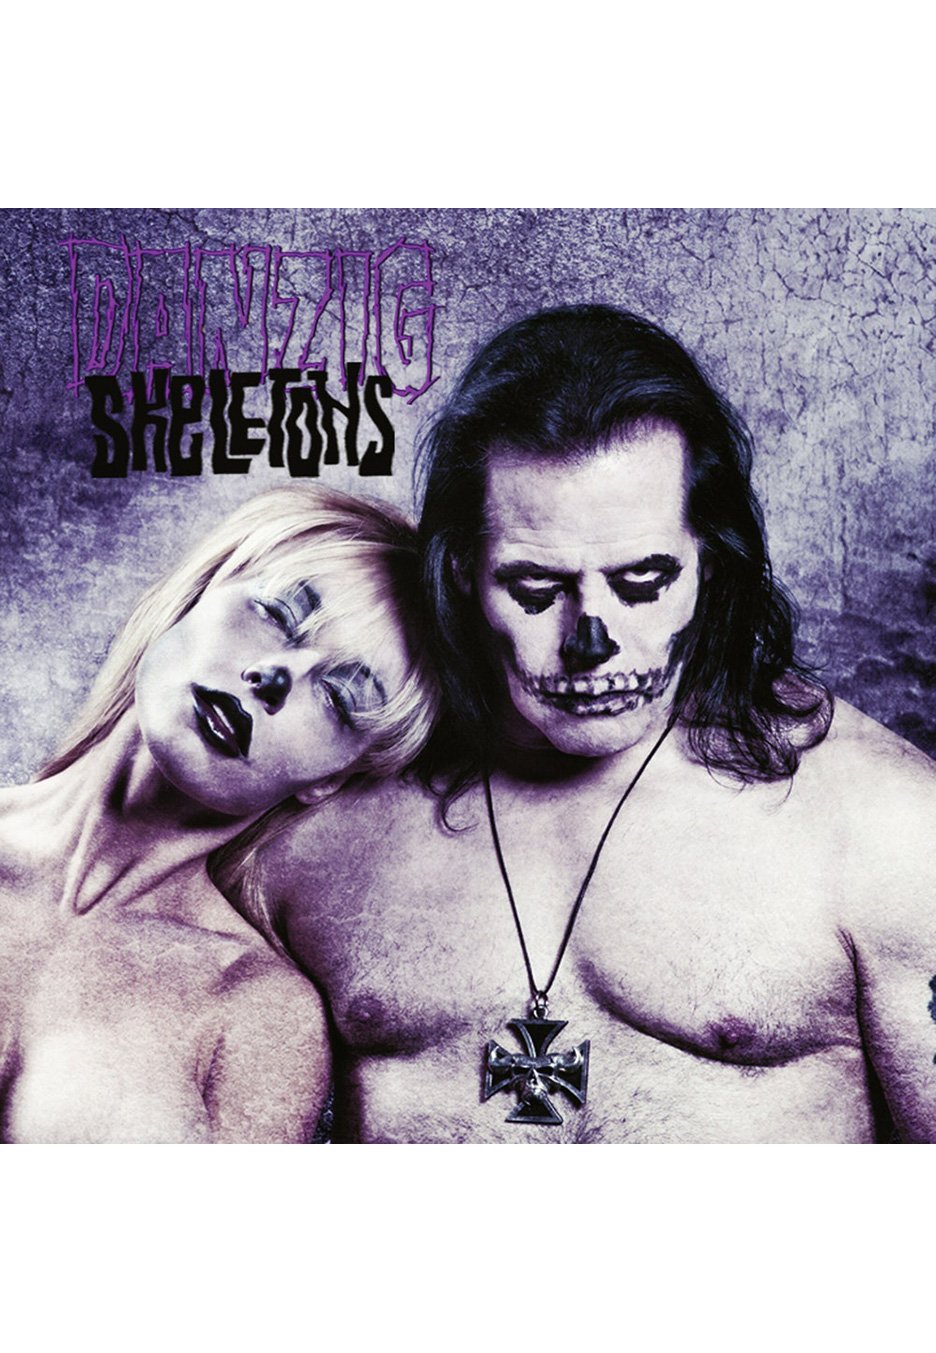 Danzig - Skeletons - Picture Vinyl